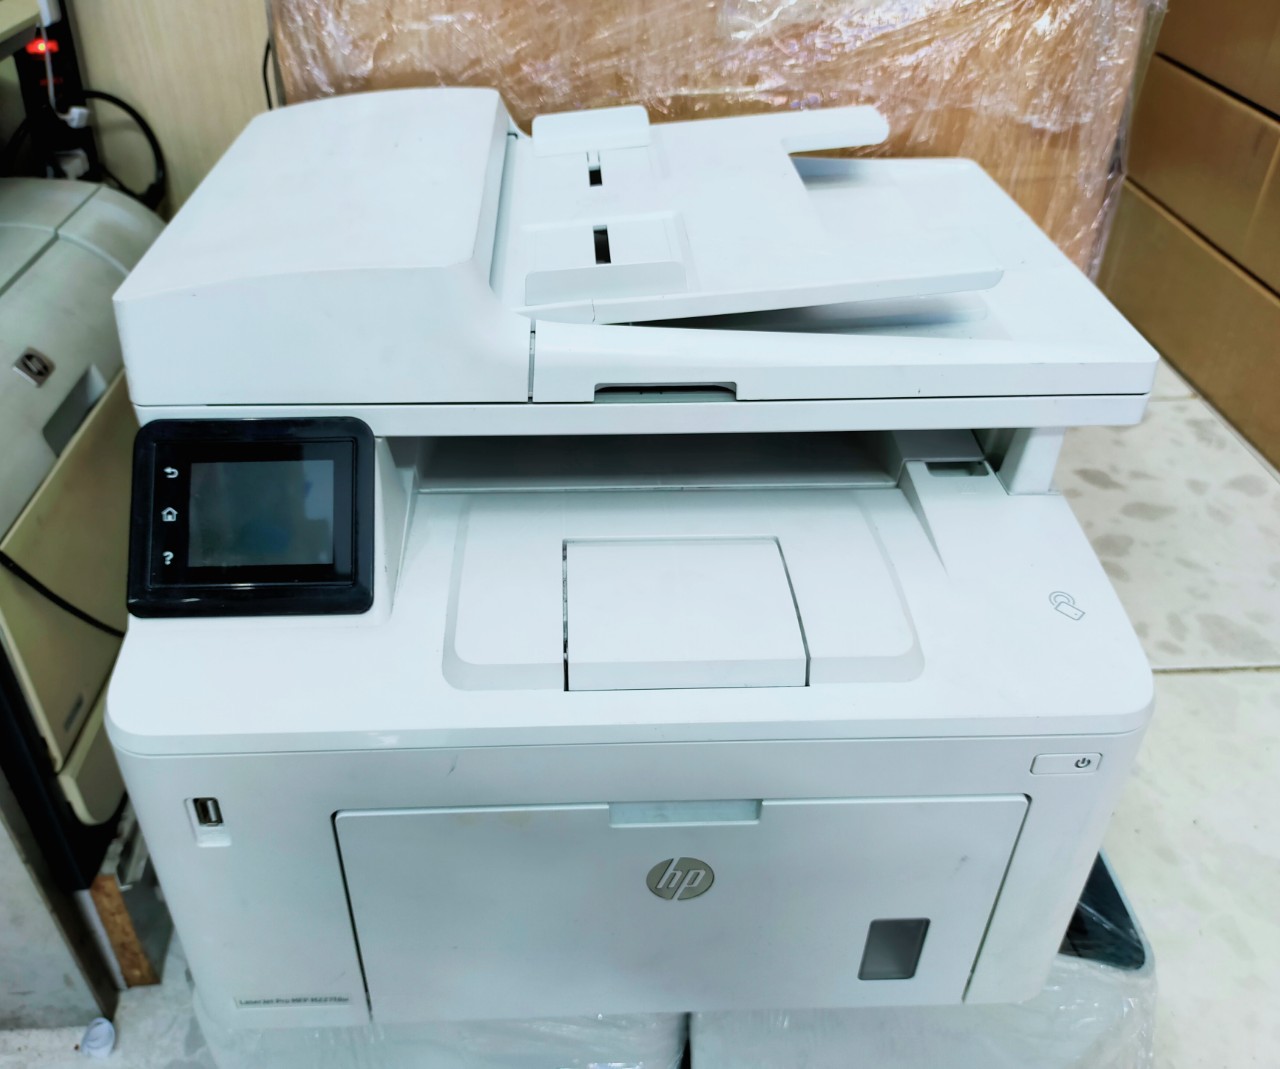 Thanh lý máy in đa chức năng in-copy-scan-in đảo mặt tiện lợi cho công việc